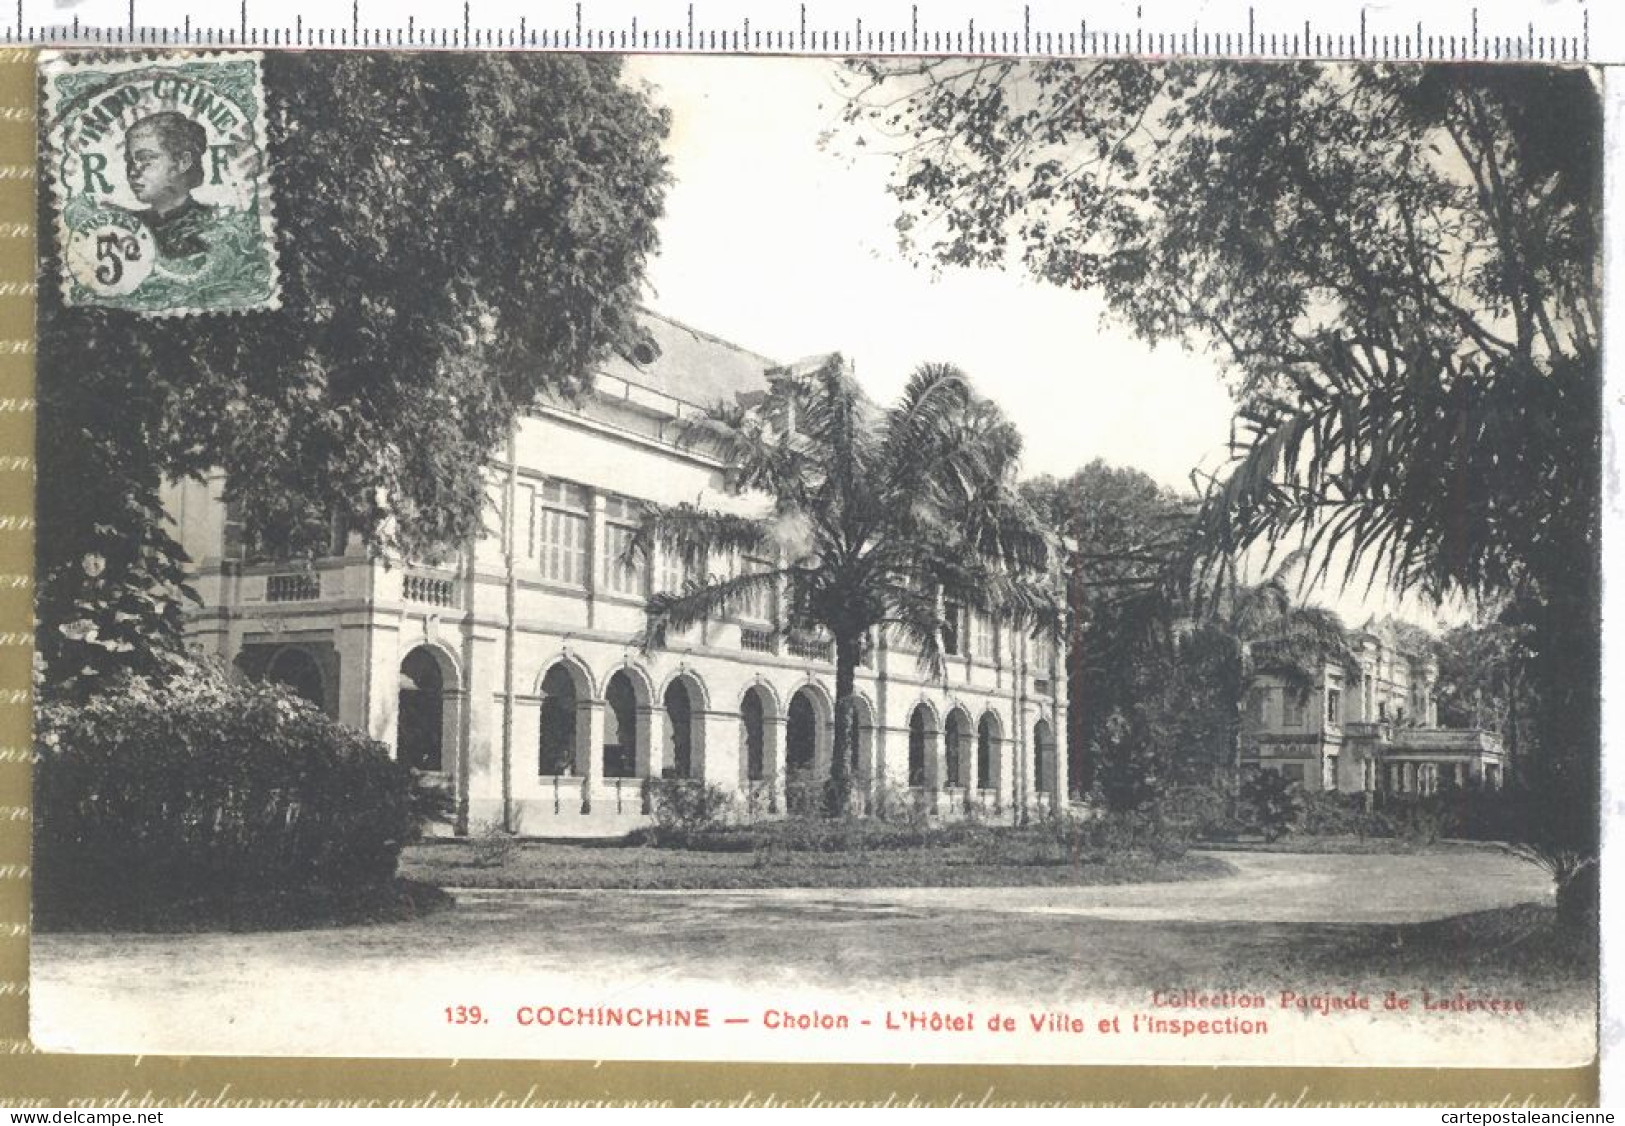 01016 ● CHOLON Cochinchine Hotel De Ville Inspection 1910 à Capitaine FOLLIET 26 Concession Hanoï Tonkin POUJADE LADEVEZ - Viêt-Nam